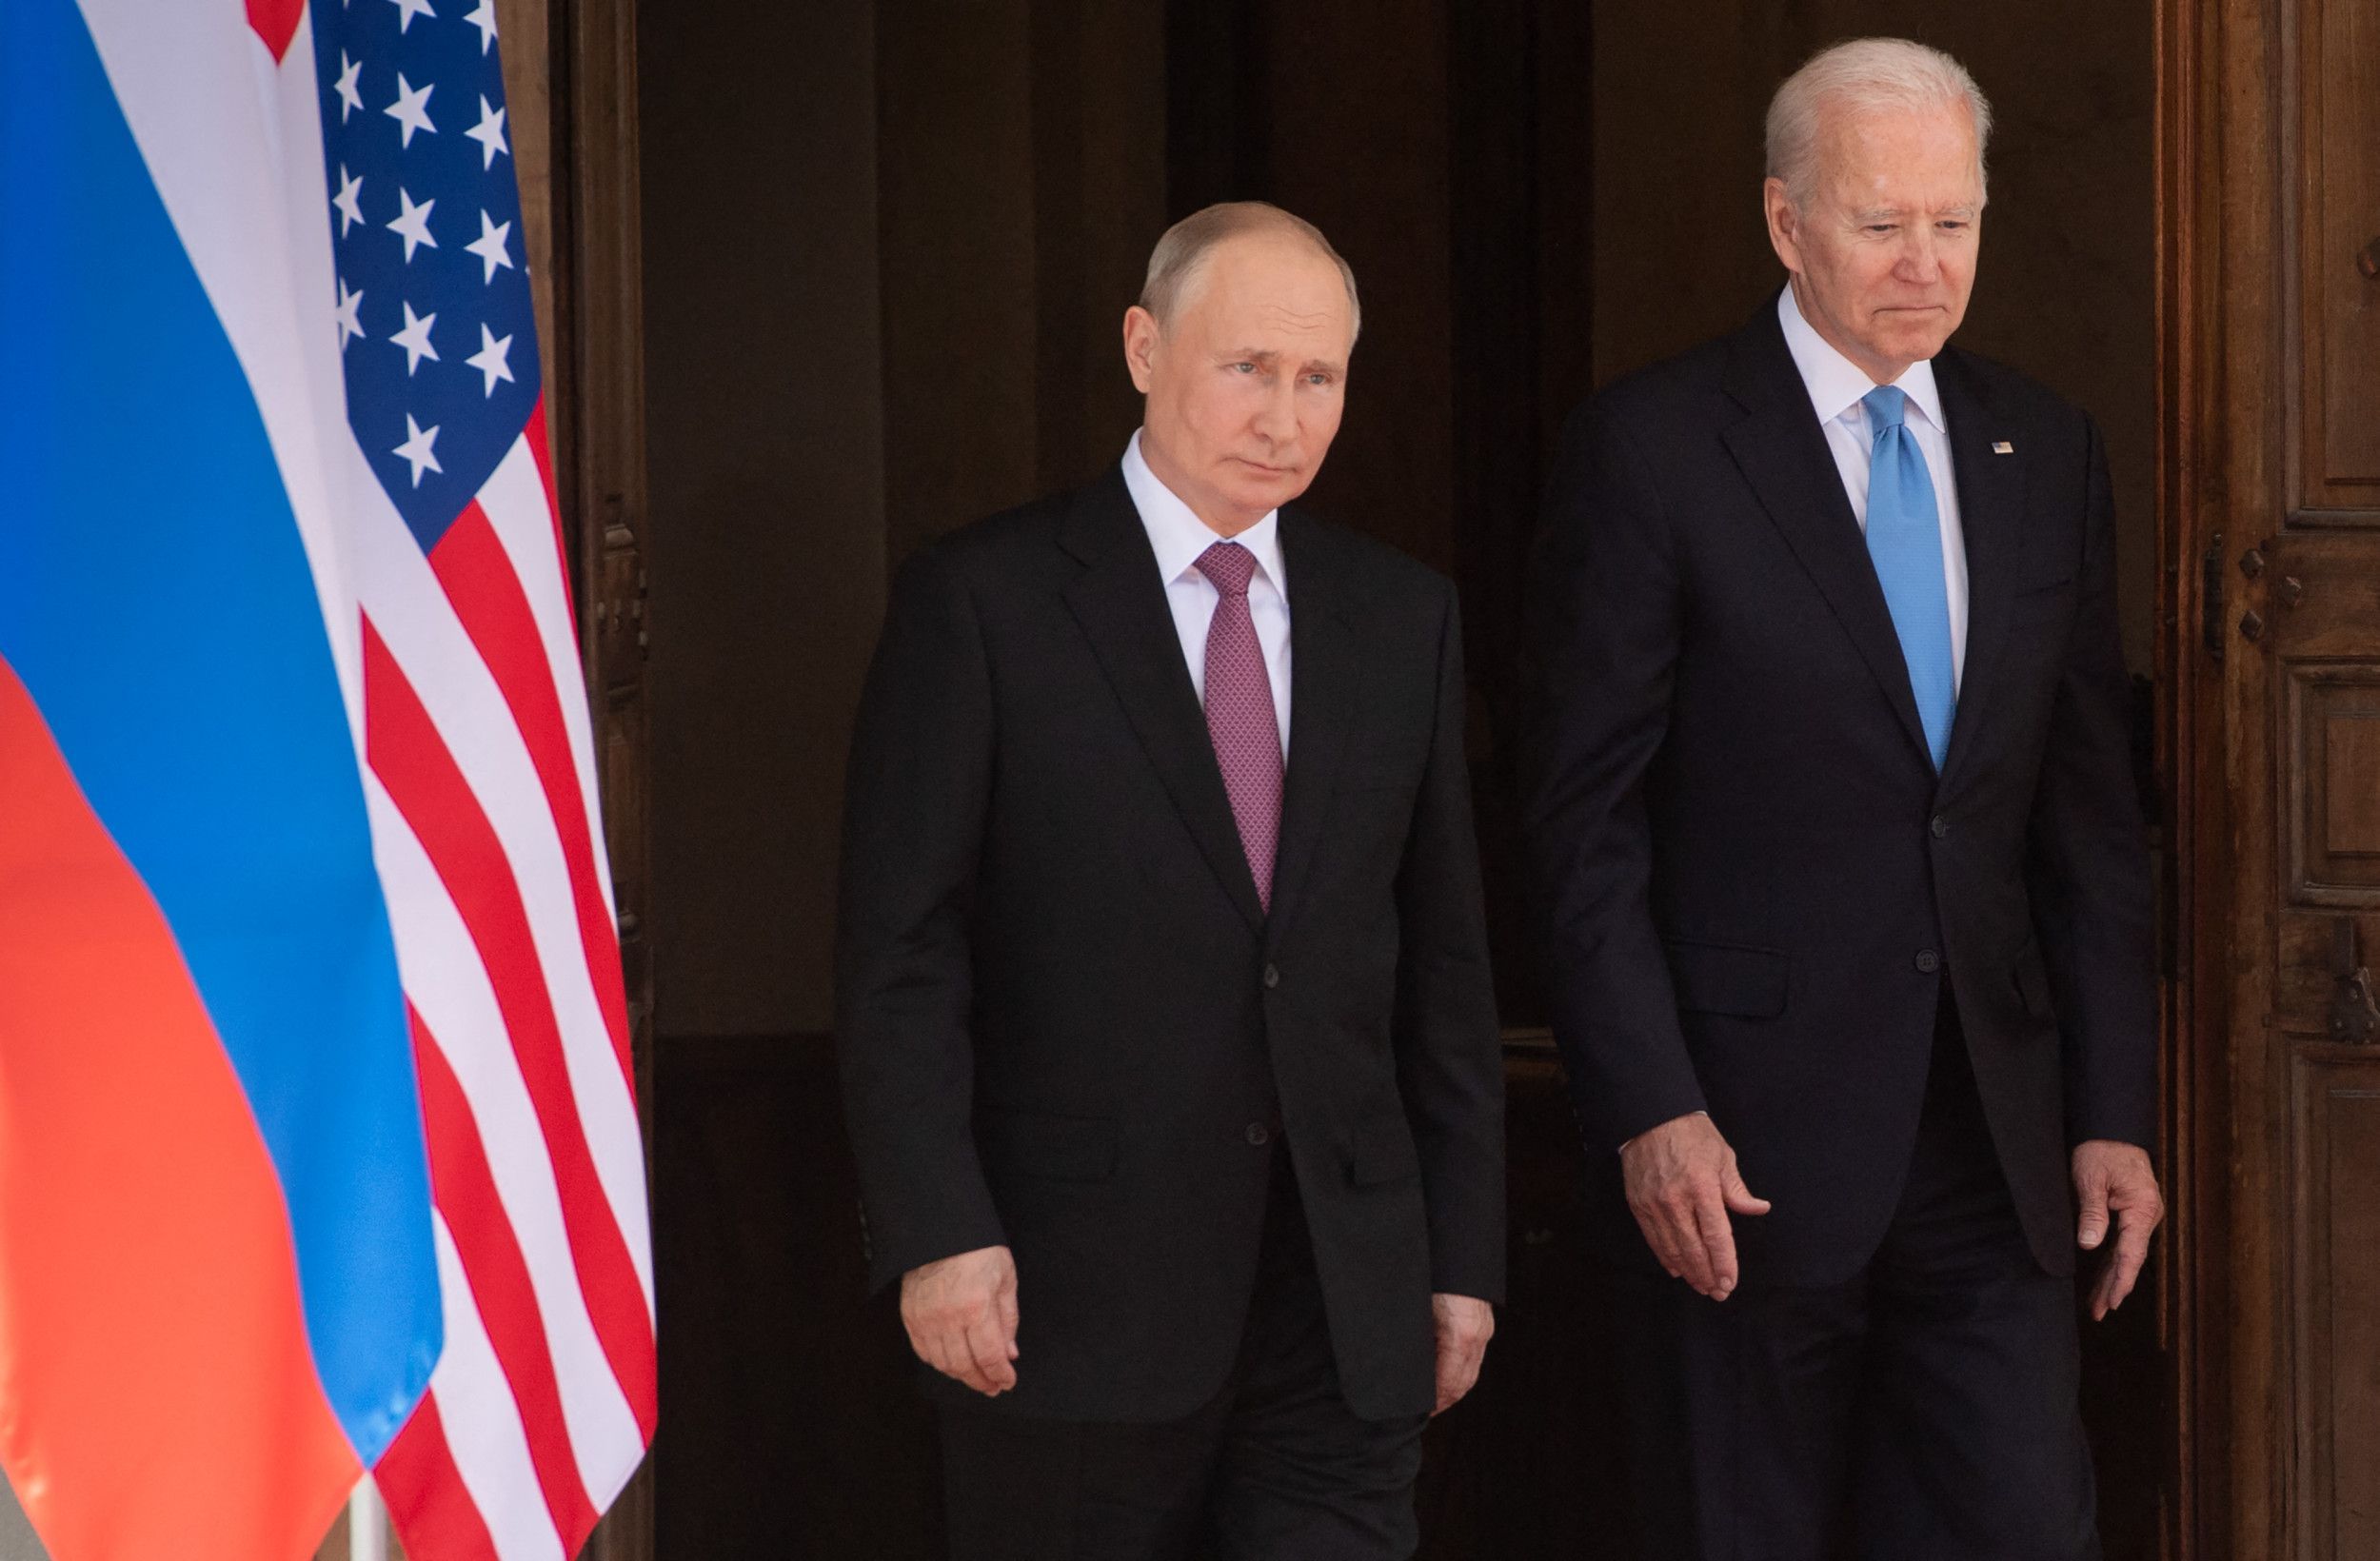 После Женевы. Стратегические выводы для Евразии из встречи Путина и Байдена